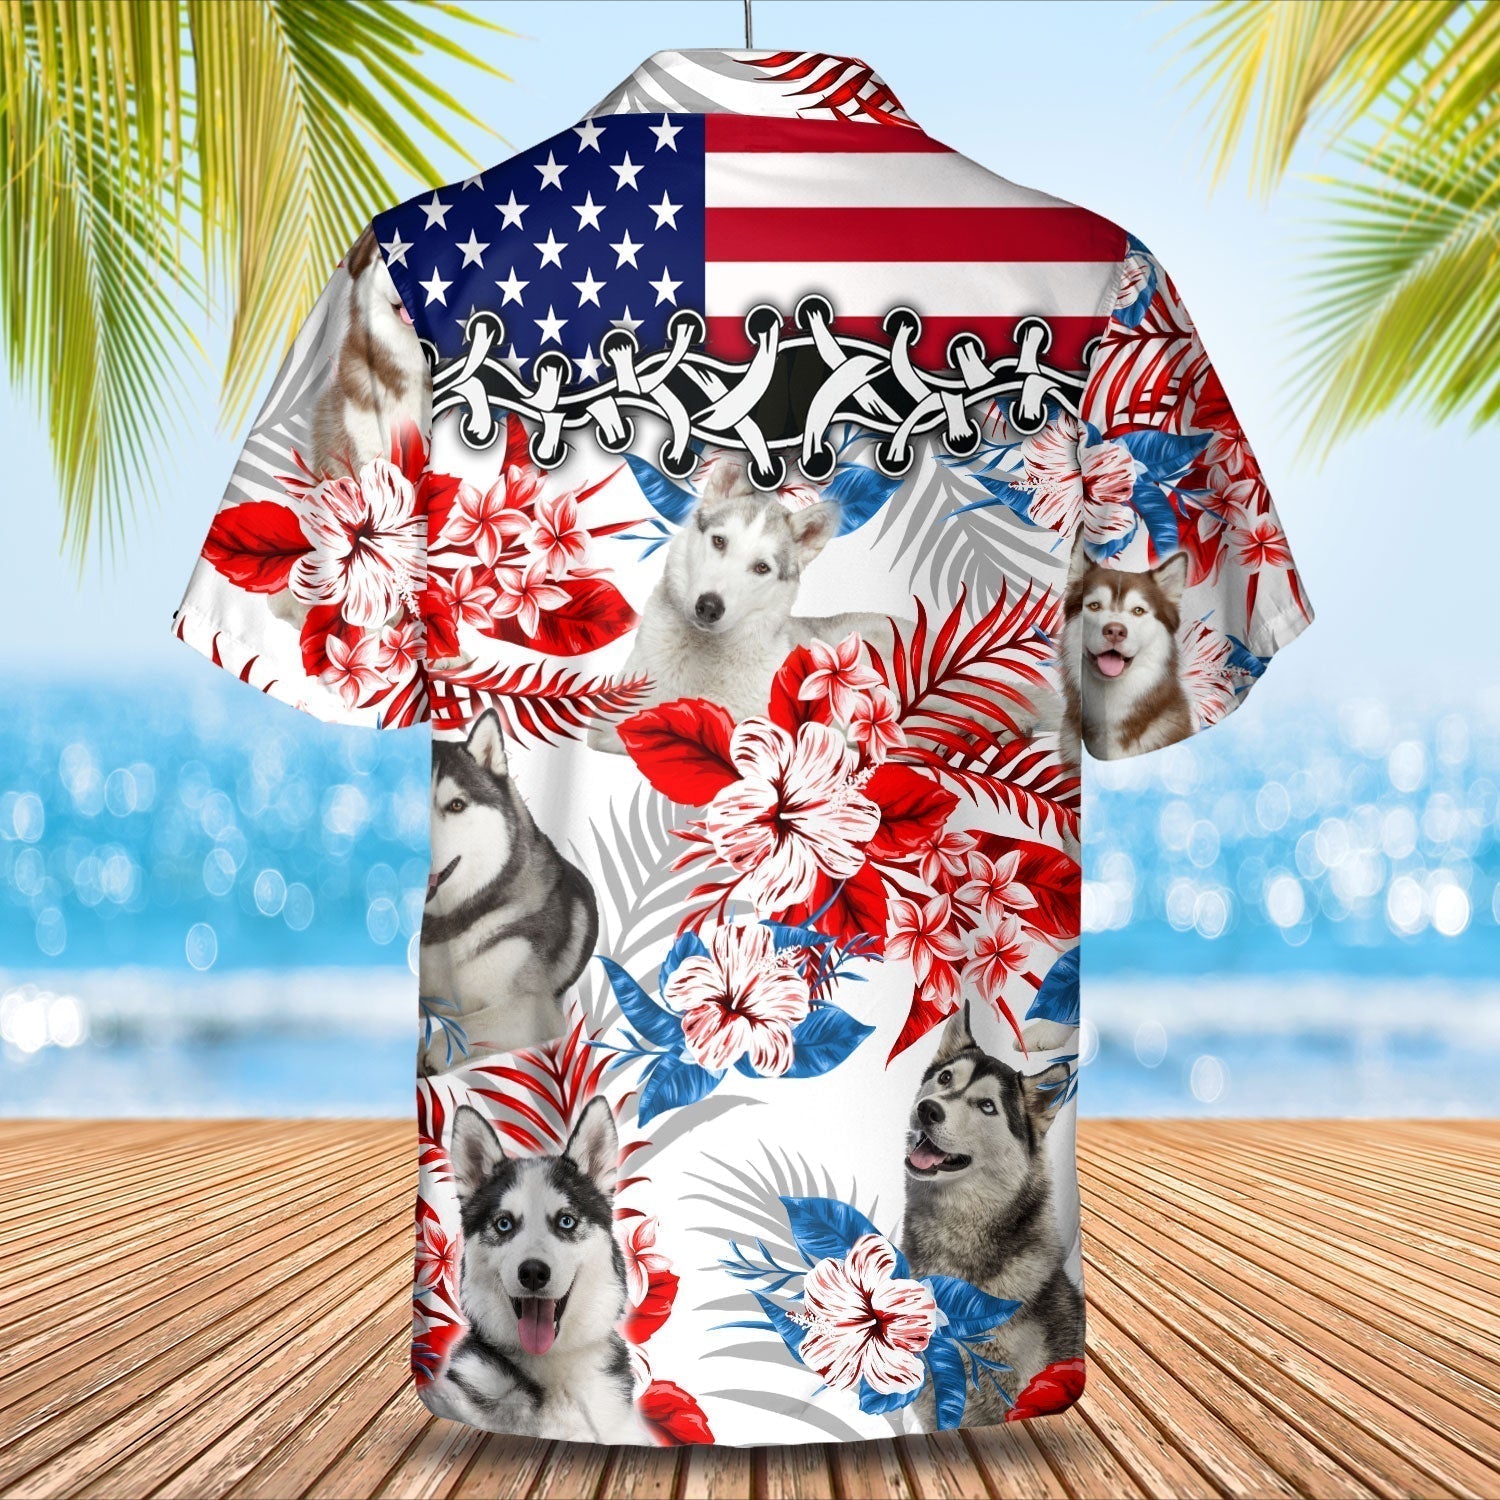 Husky Hawaiian Shirt - Gift for Summer/ Summer aloha shirt/ Hawaiian shirt for Men and women